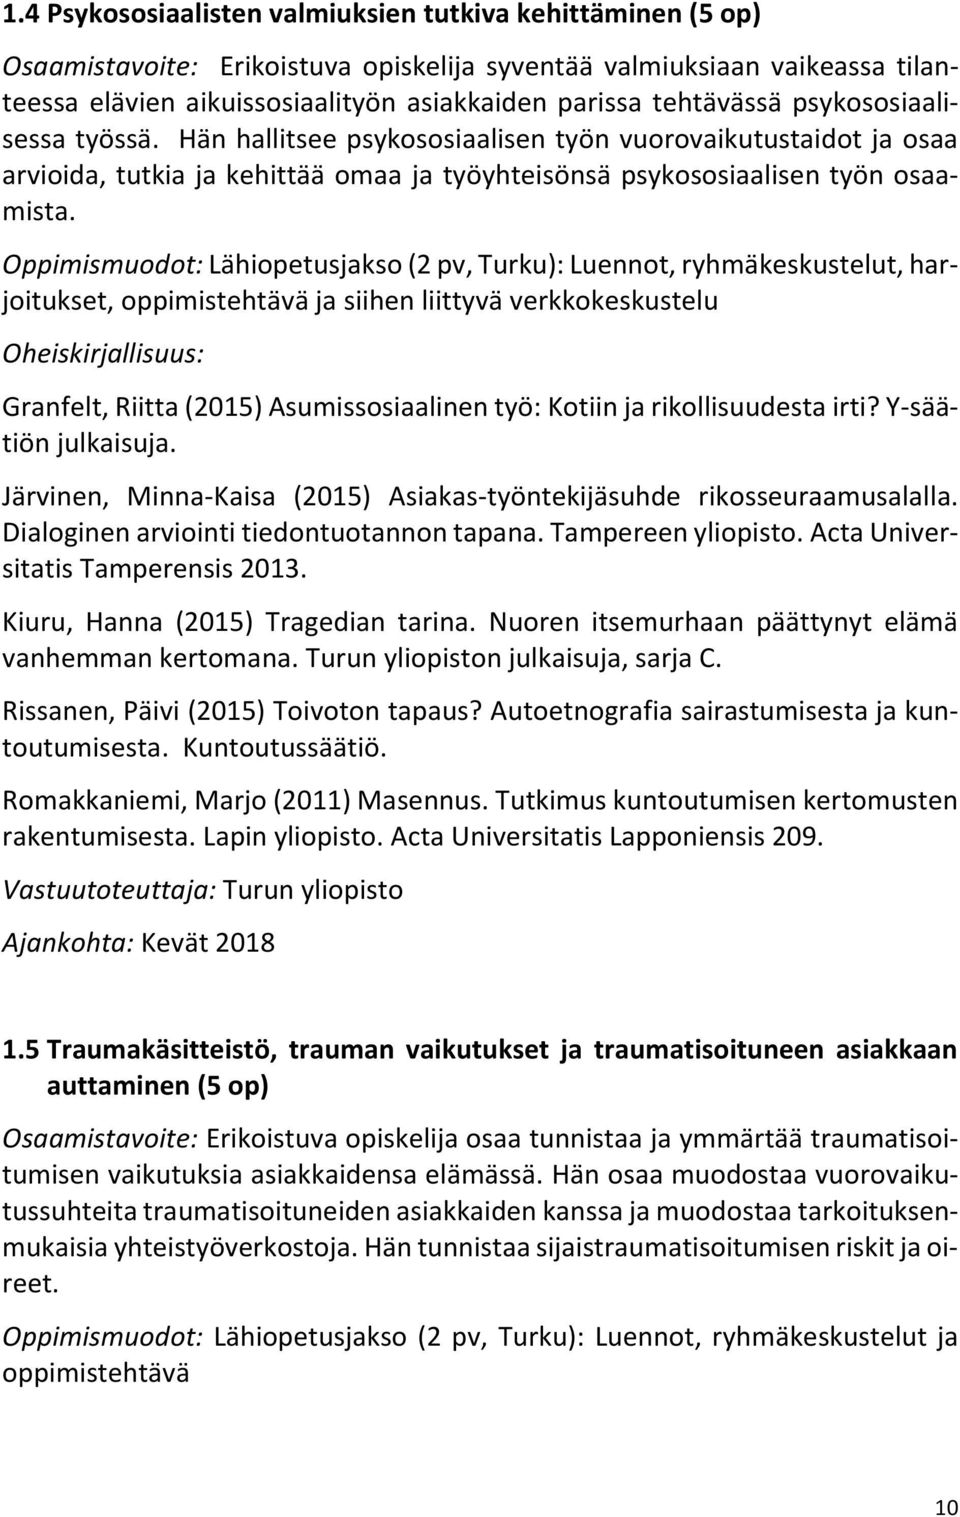 Oppimismuodot: Lähiopetusjakso (2 pv, Turku): Luennot, ryhmäkeskustelut, harjoitukset, oppimistehtävä ja siihen liittyvä verkkokeskustelu Oheiskirjallisuus: Granfelt, Riitta (2015) Asumissosiaalinen